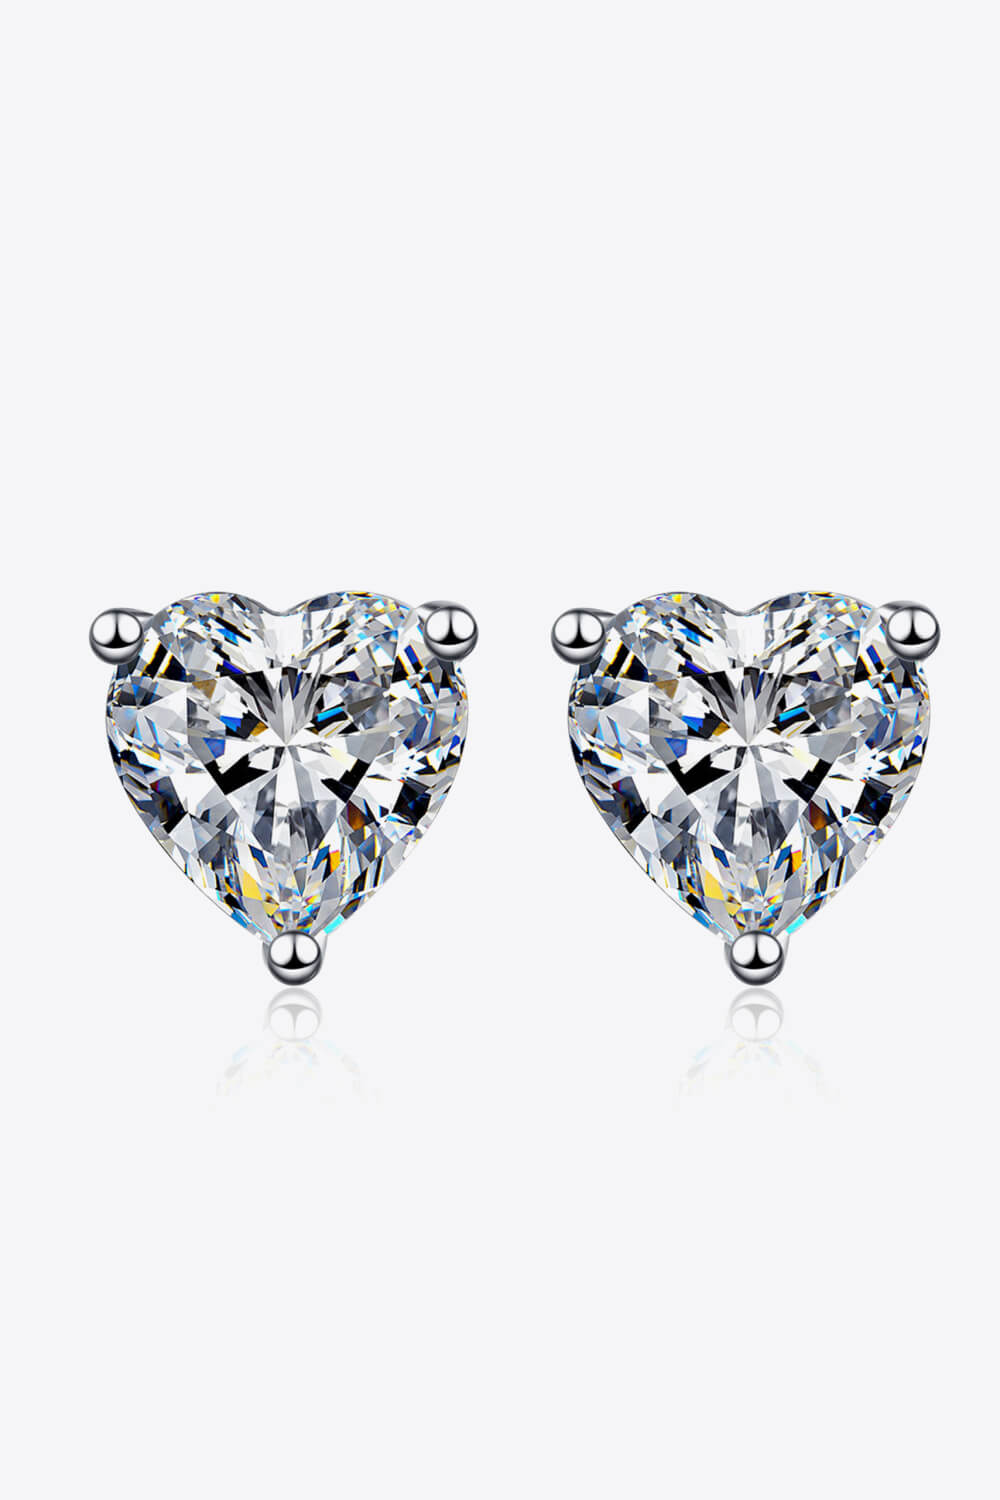 2 Carat Moissanite Heart-Shaped Stud Earrings - Earrings - FITGGINS